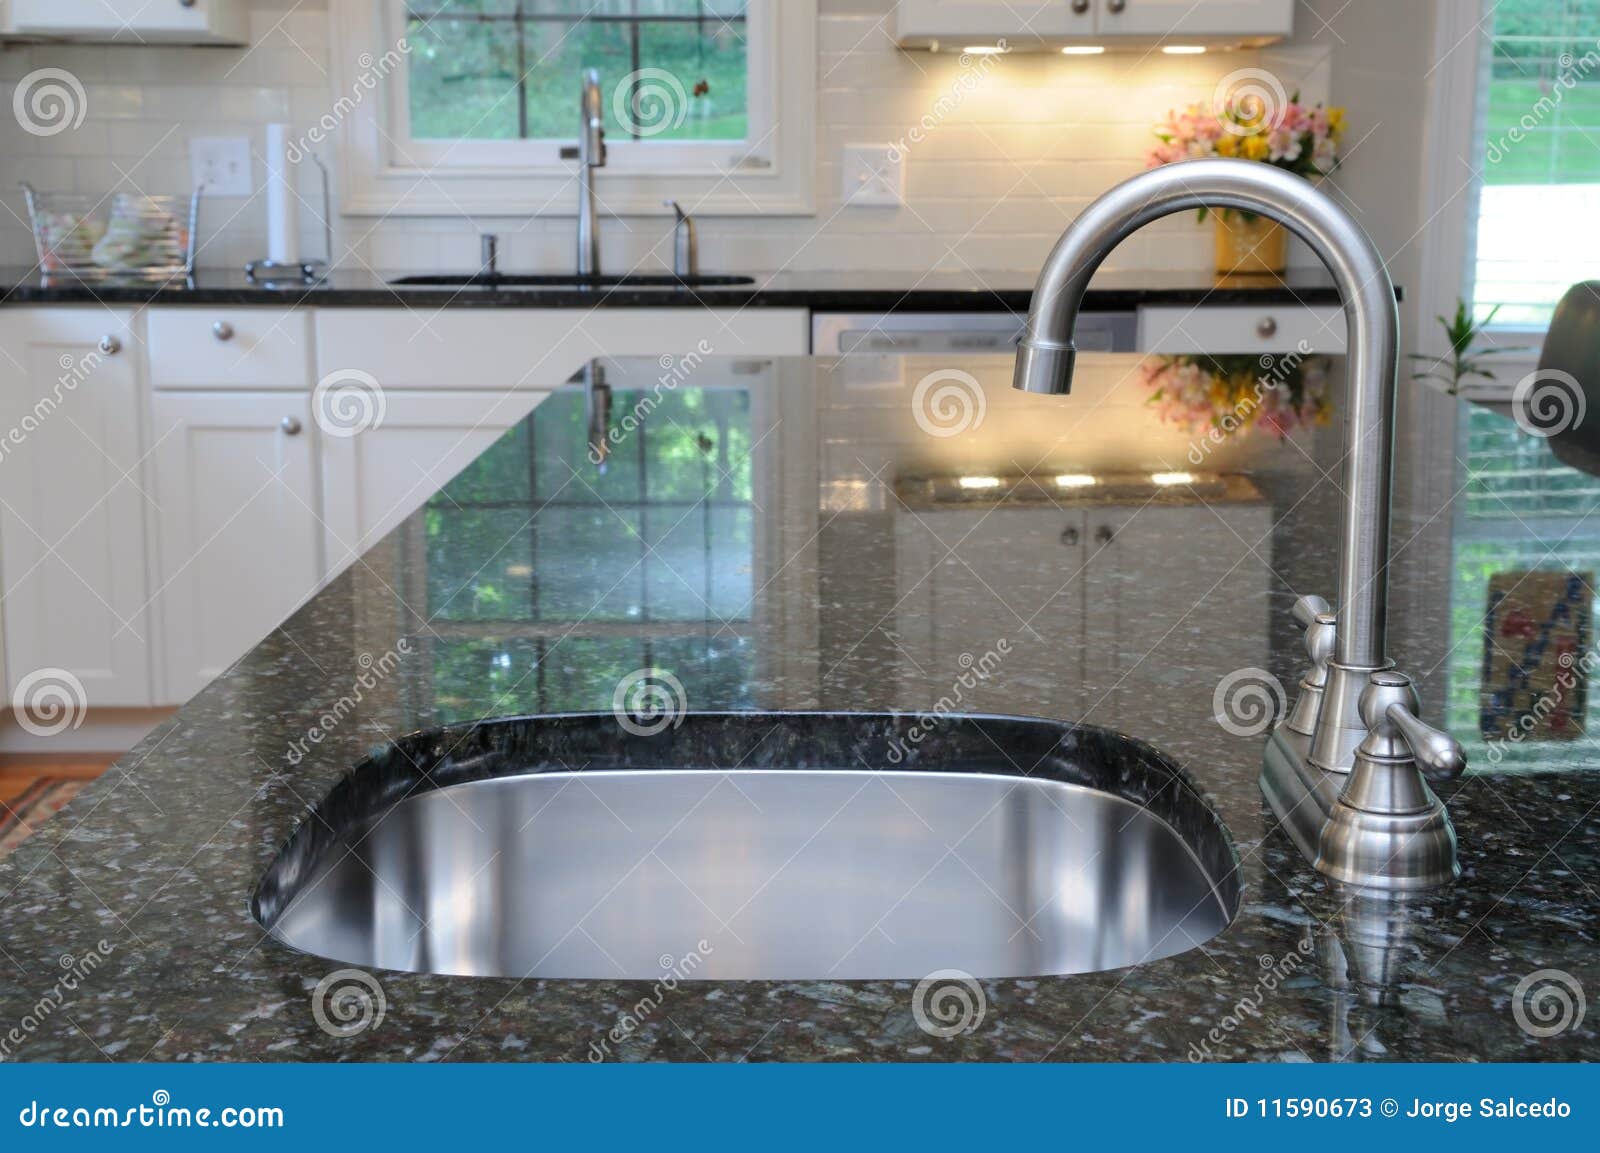 kitchen sink on granite counter